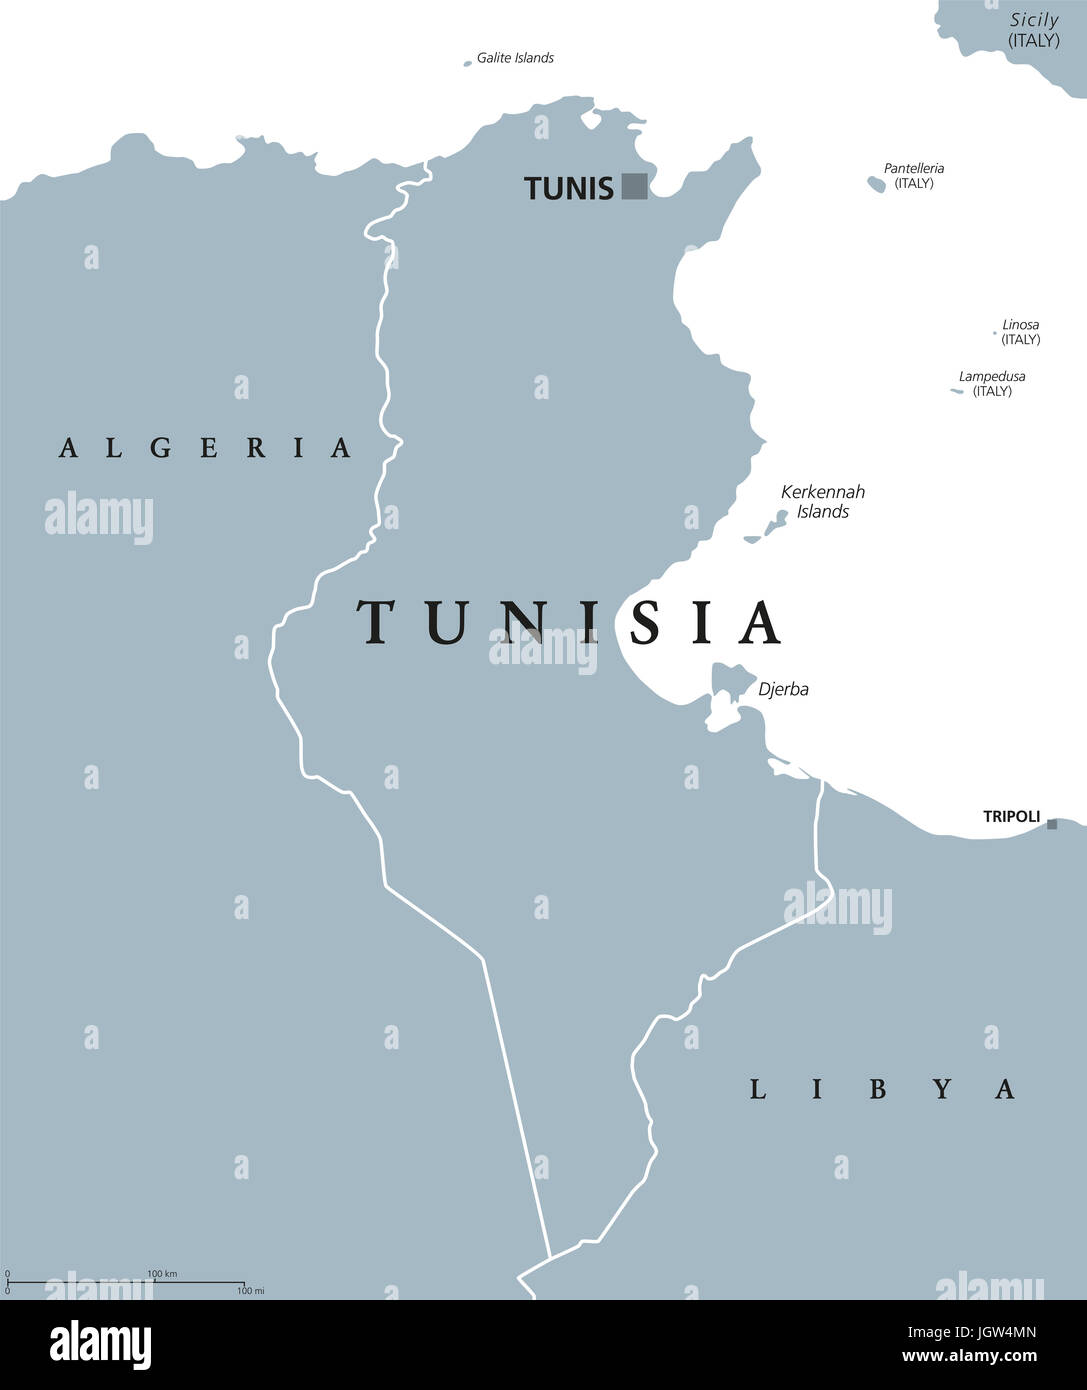 Carte politique de la Tunisie avec capitale Tunis et frontières. République Tunisienne. Pays arabes dans la région du Maghreb, d'Afrique du Nord. Gris illustration. Banque D'Images